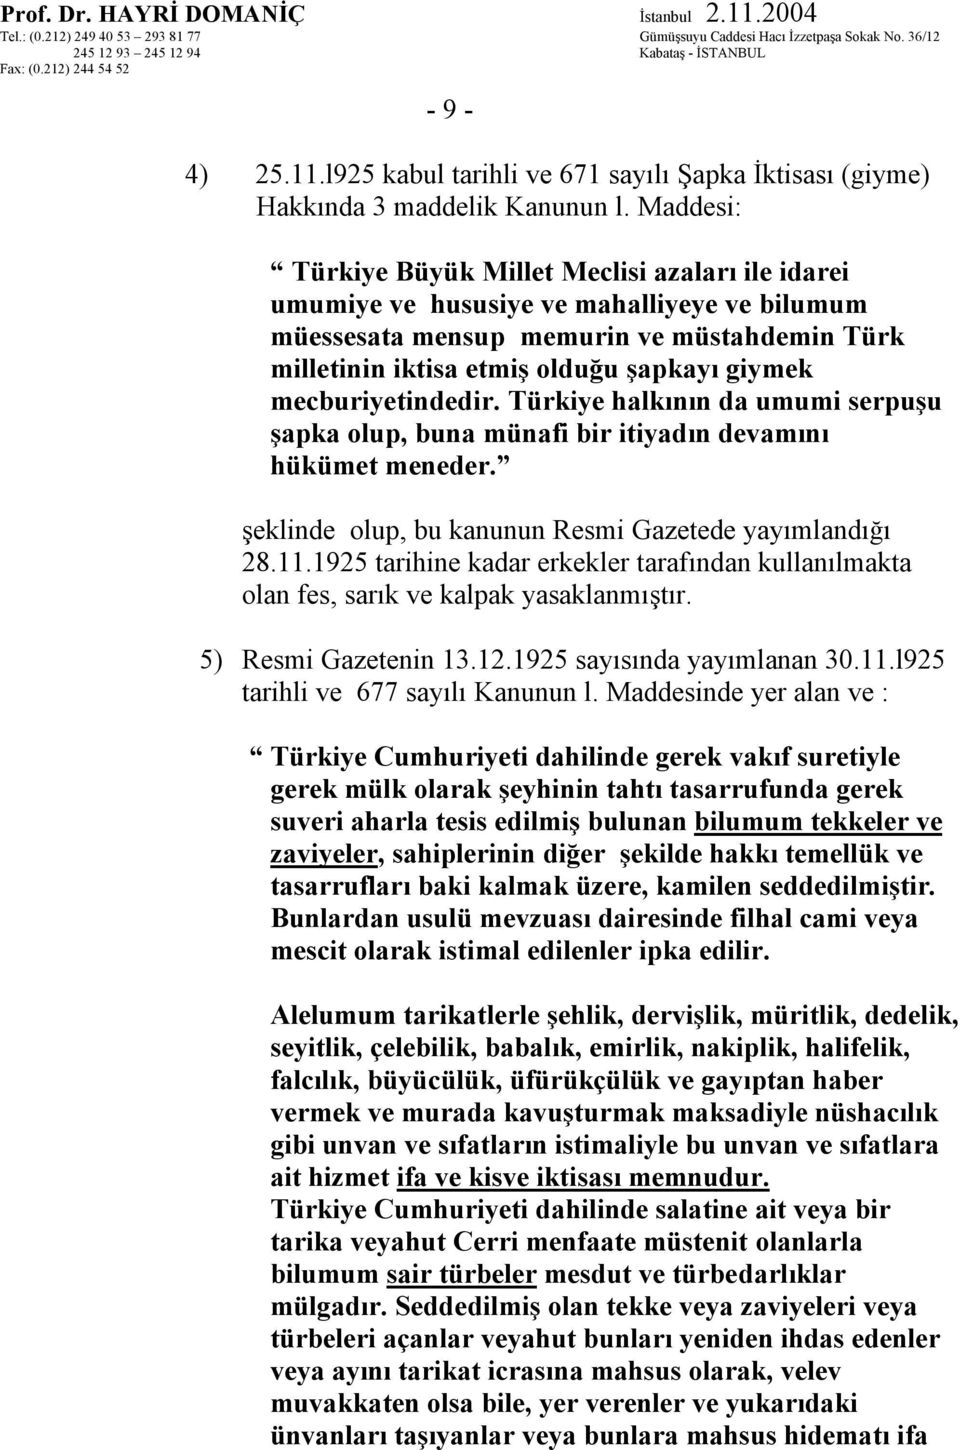 mecburiyetindedir. Türkiye halkının da umumi serpuşu şapka olup, buna münafi bir itiyadın devamını hükümet meneder. şeklinde olup, bu kanunun Resmi Gazetede yayımlandığı 28.11.